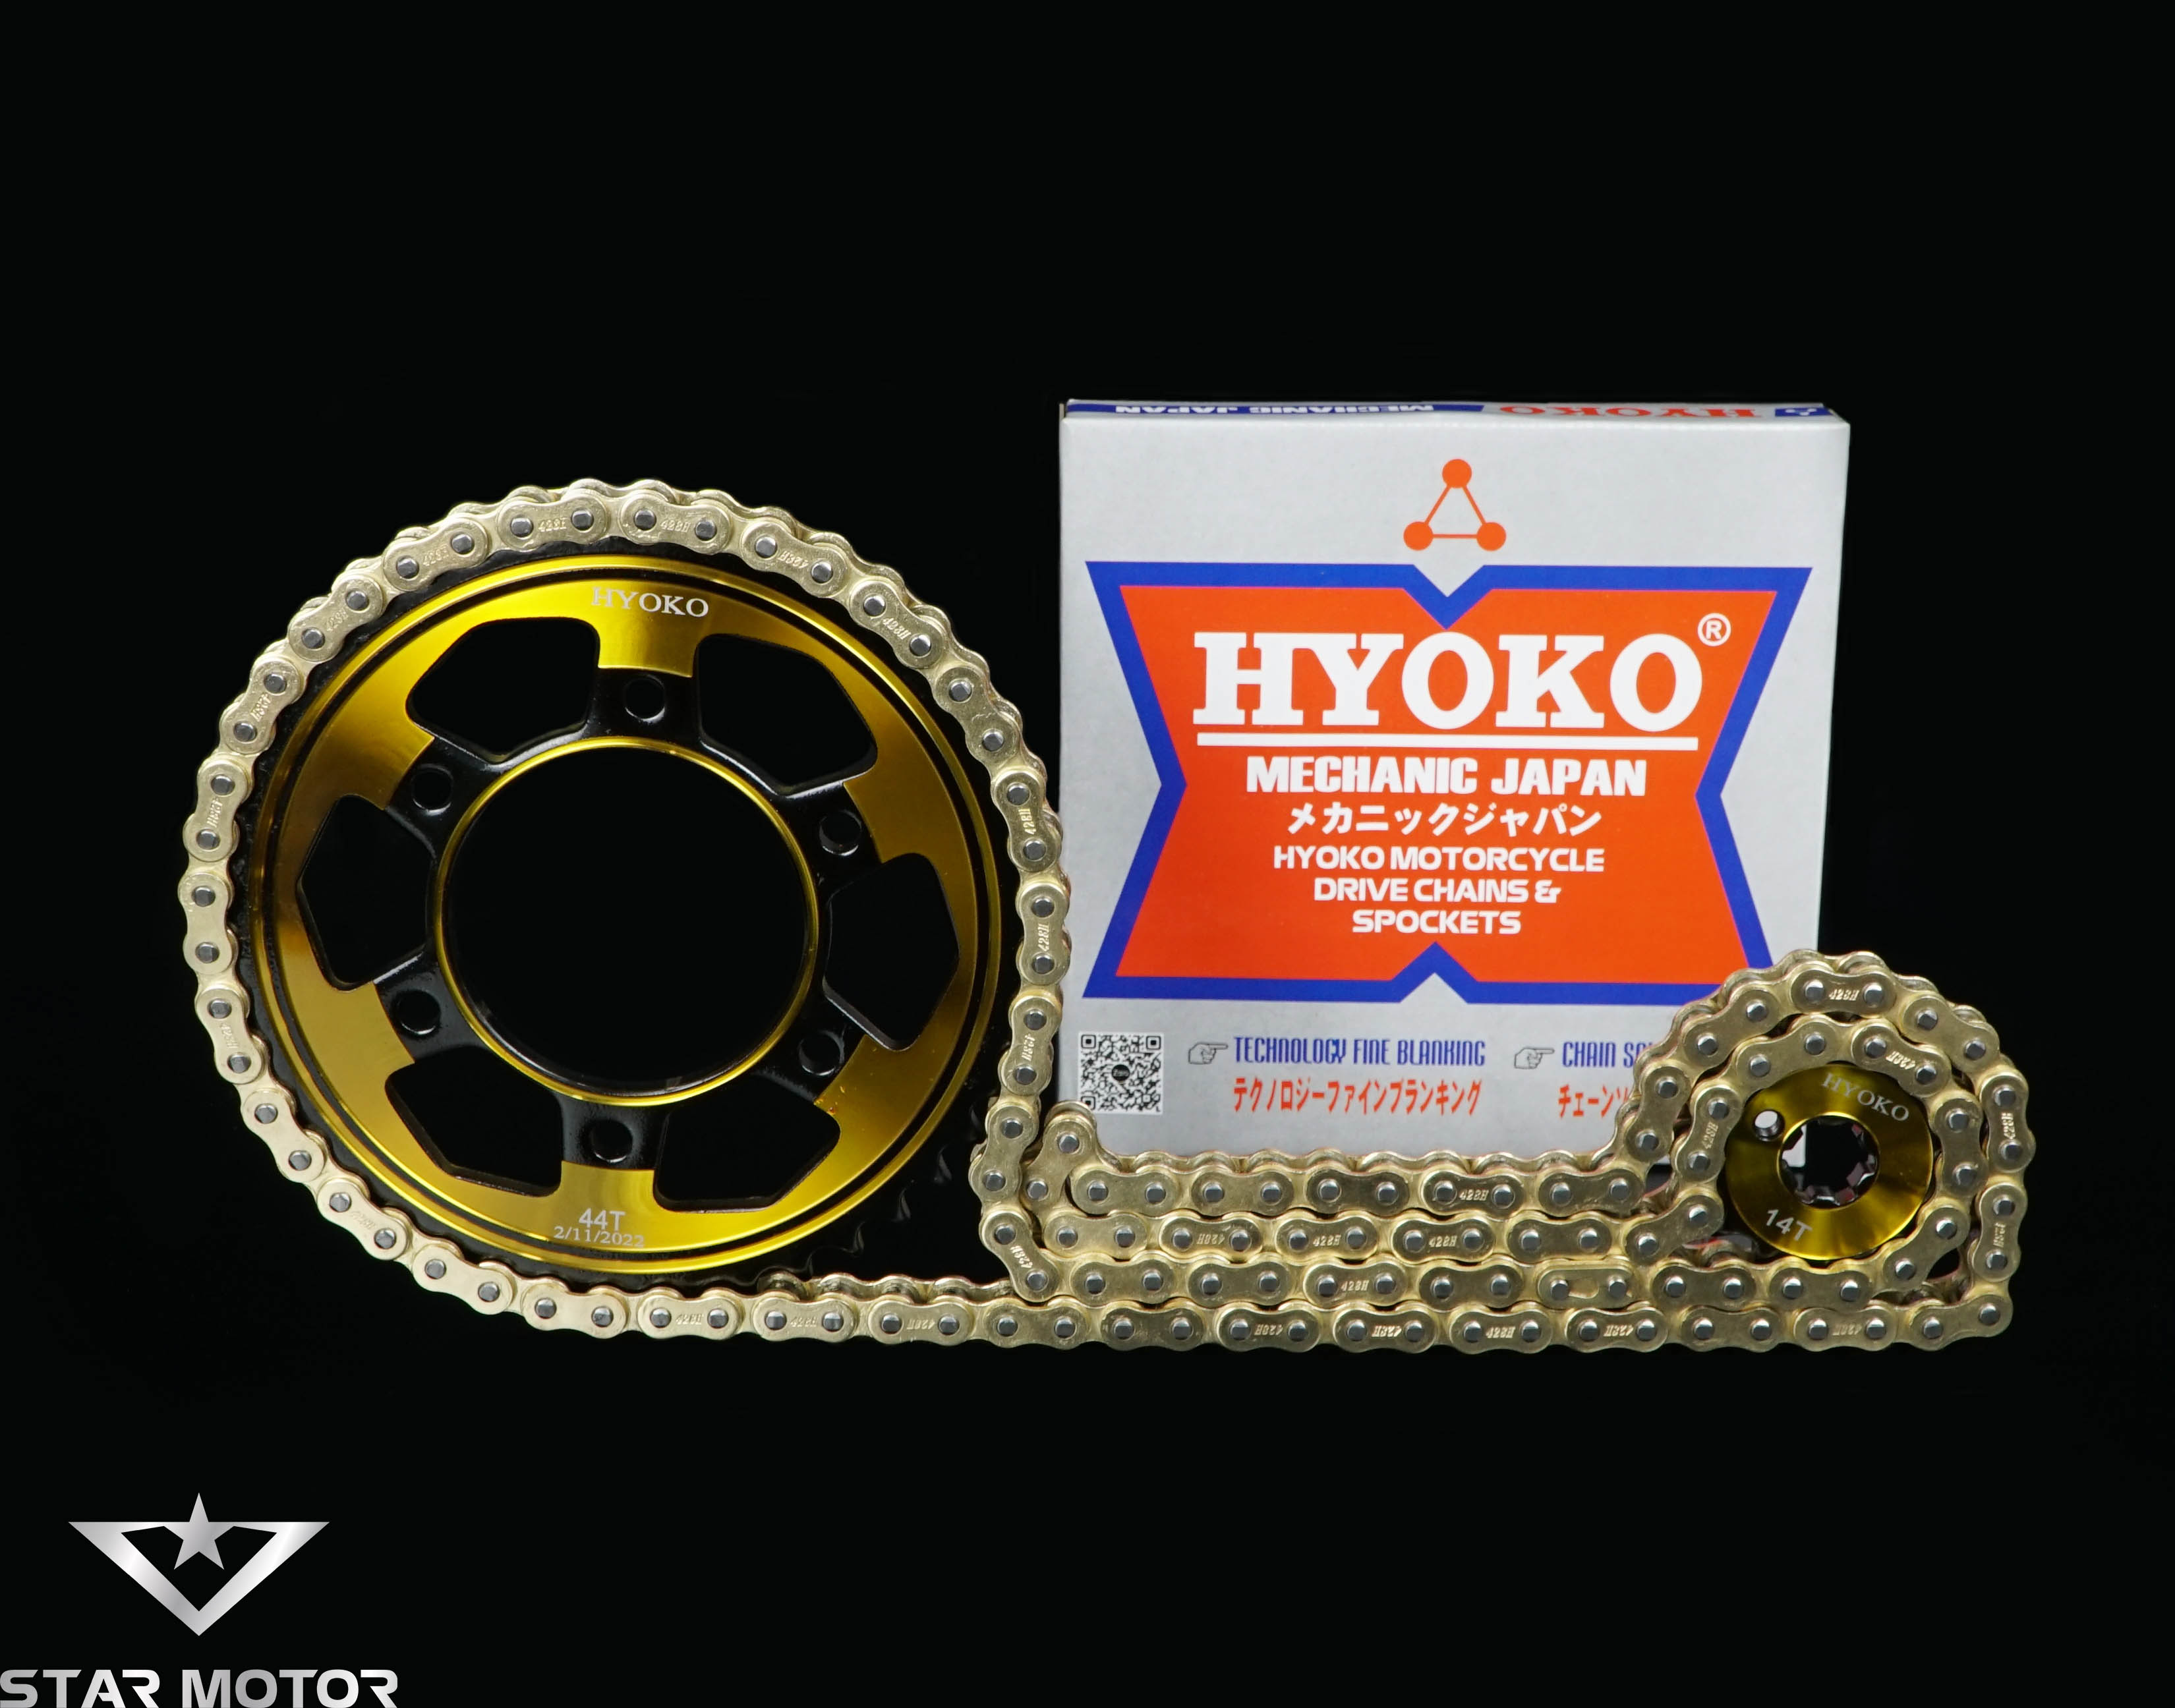 Nhông sên đĩa Hyoko nhập khẩu Nhật Bản dành cho Exciter, Winner, Wave, Si, Dream